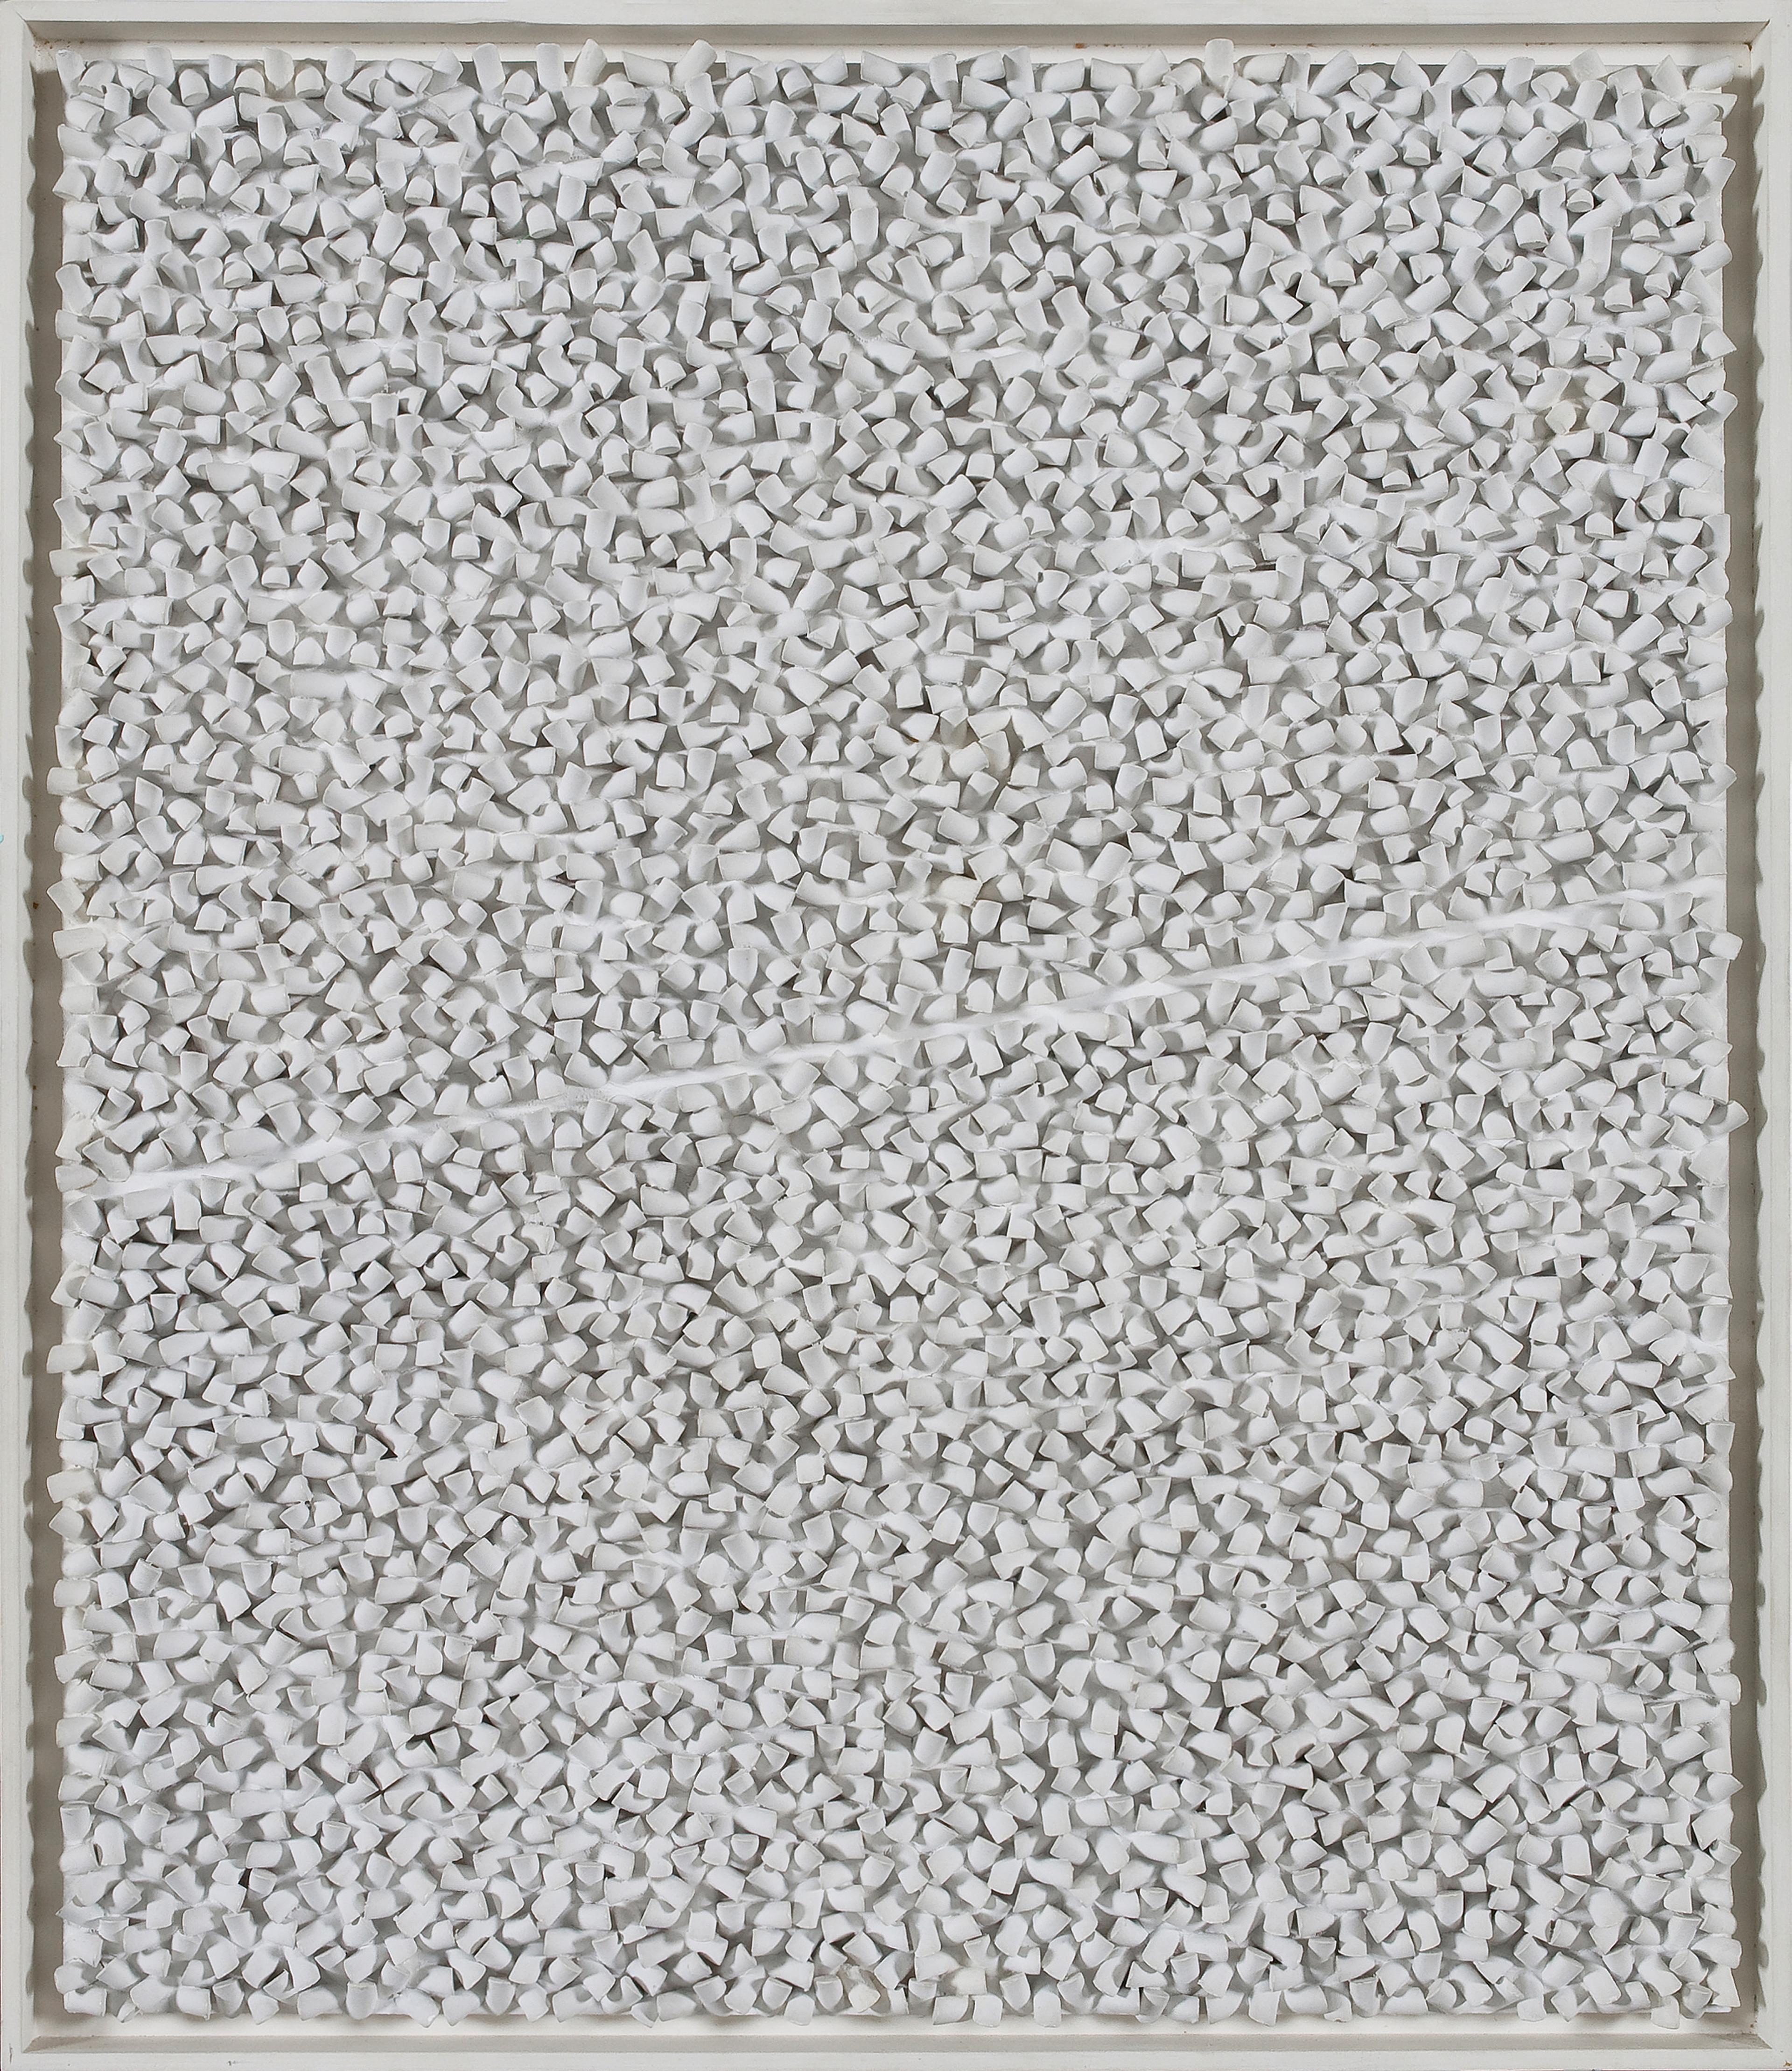 Et bilde som viser et relieff med små knotter i tre, malt i hvitt